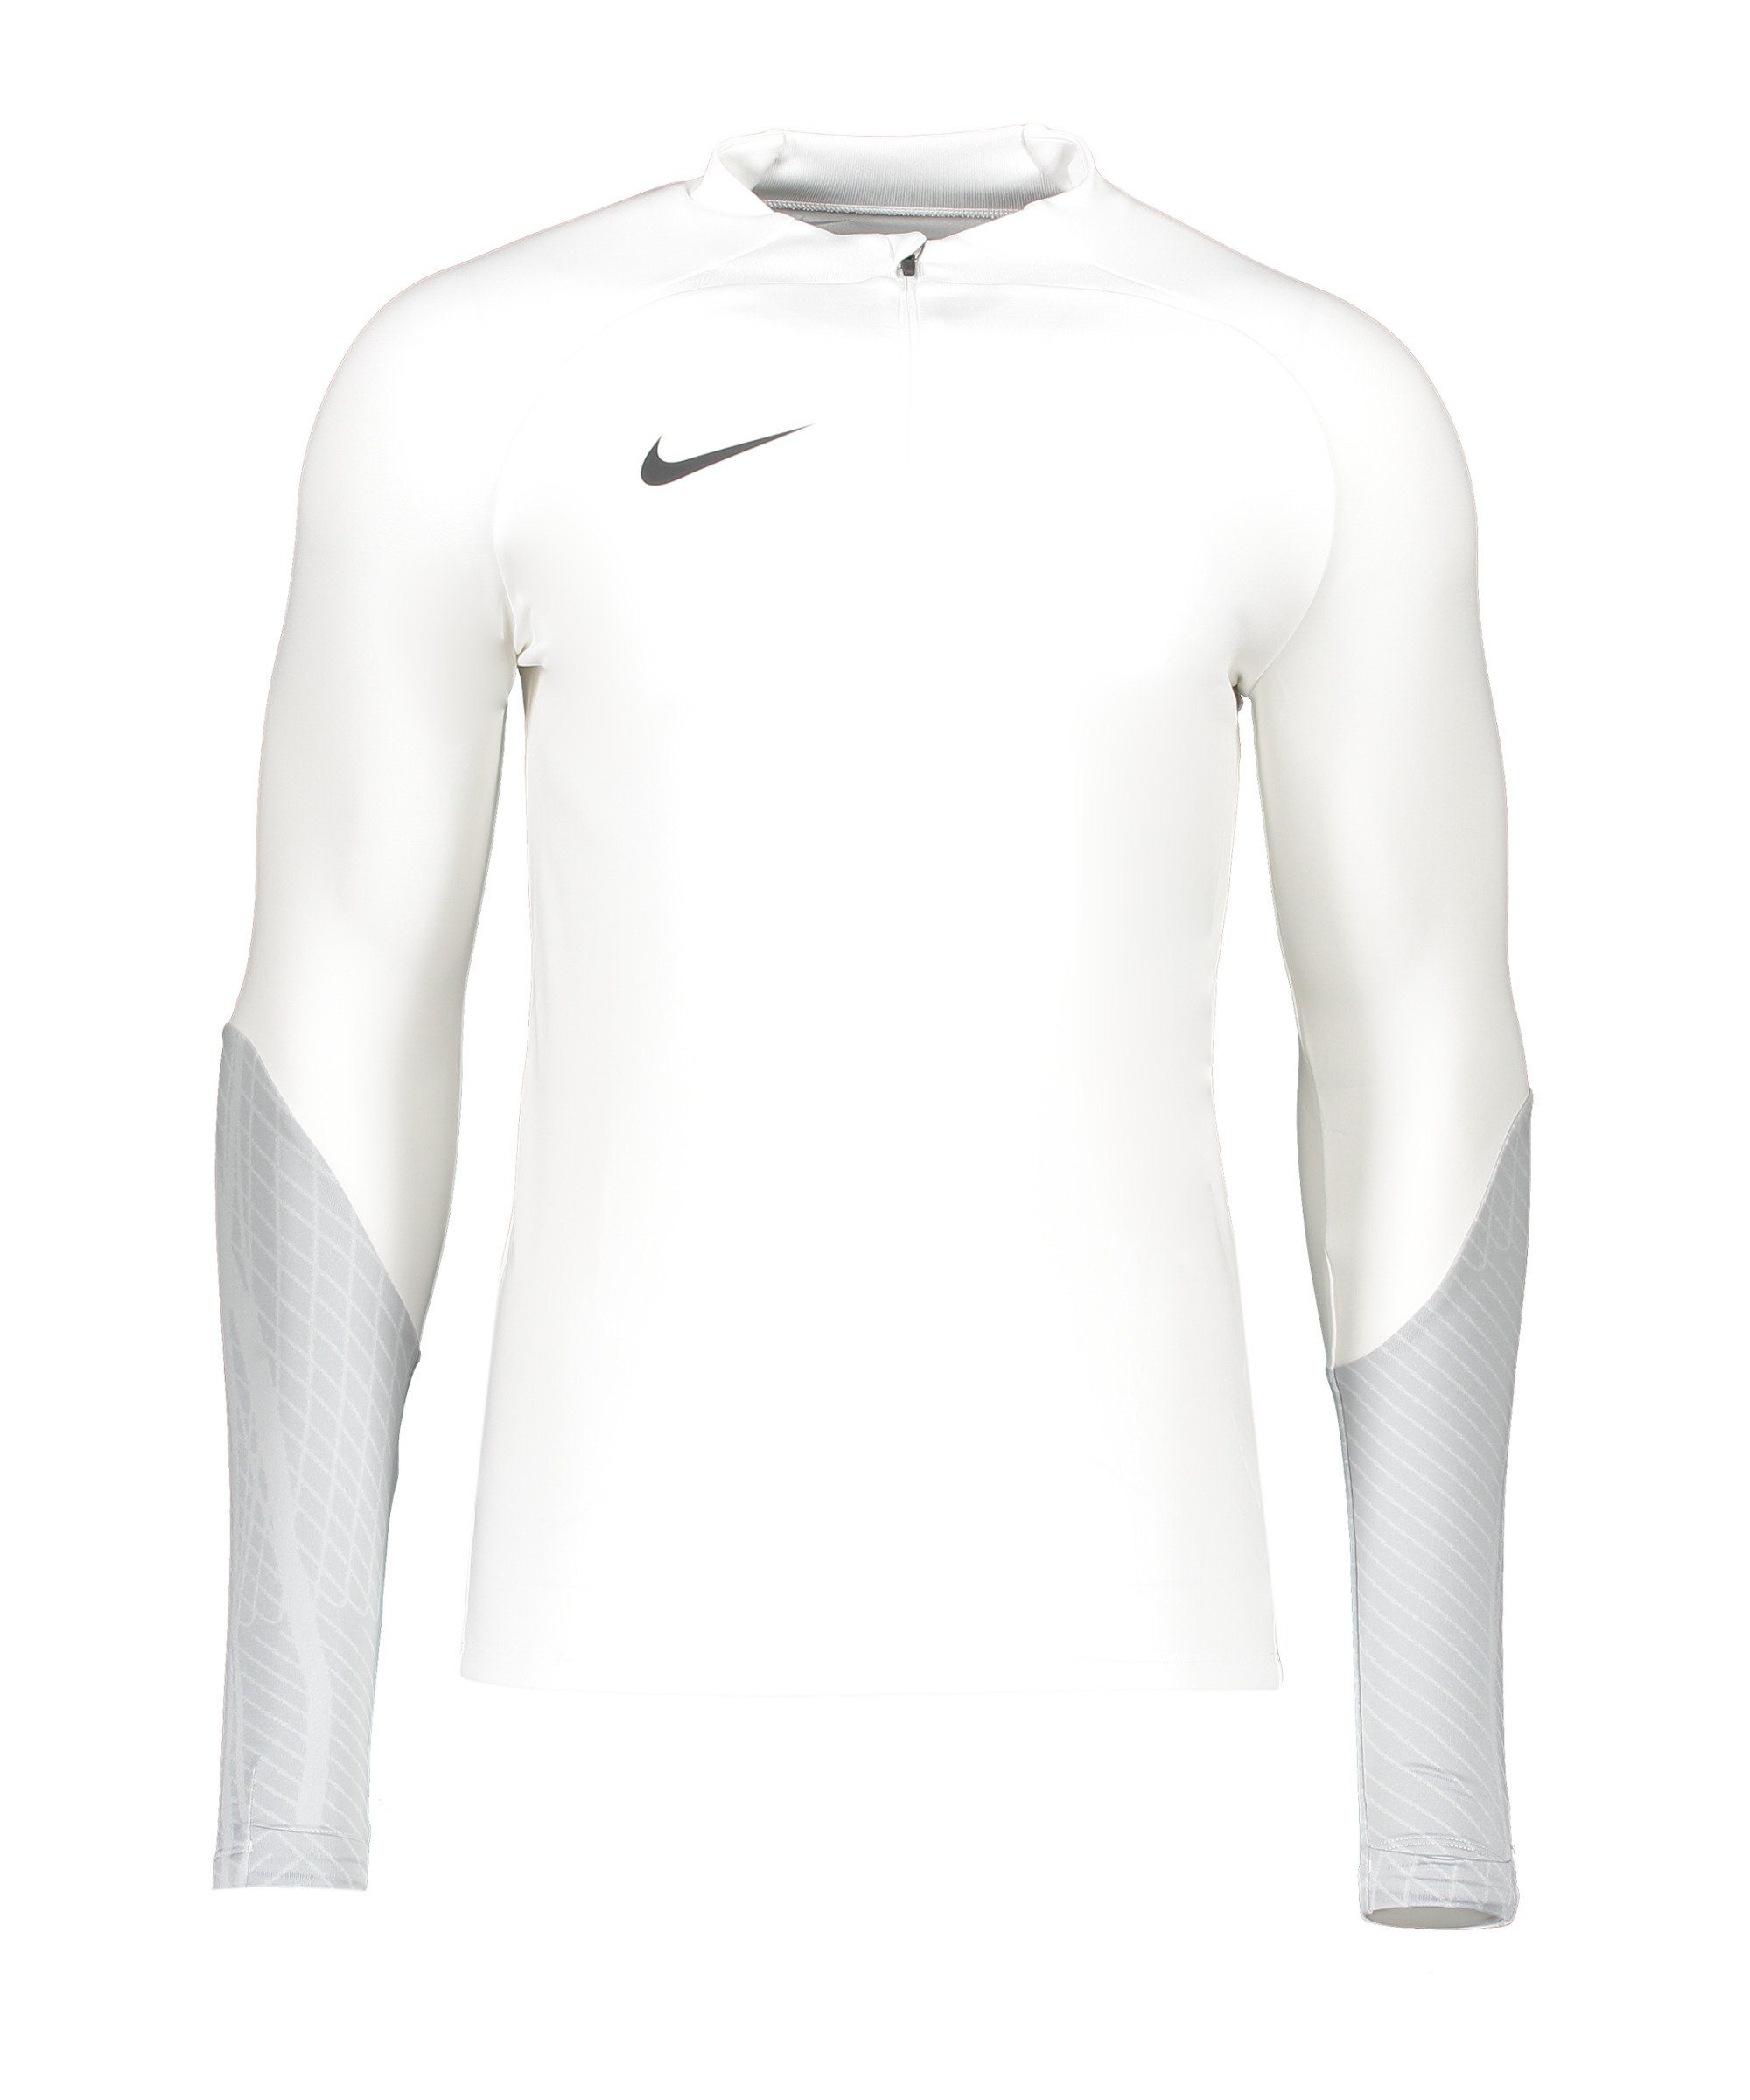 23 weissgrauweissschwarz Top Sweatshirt Nike Strike Drill